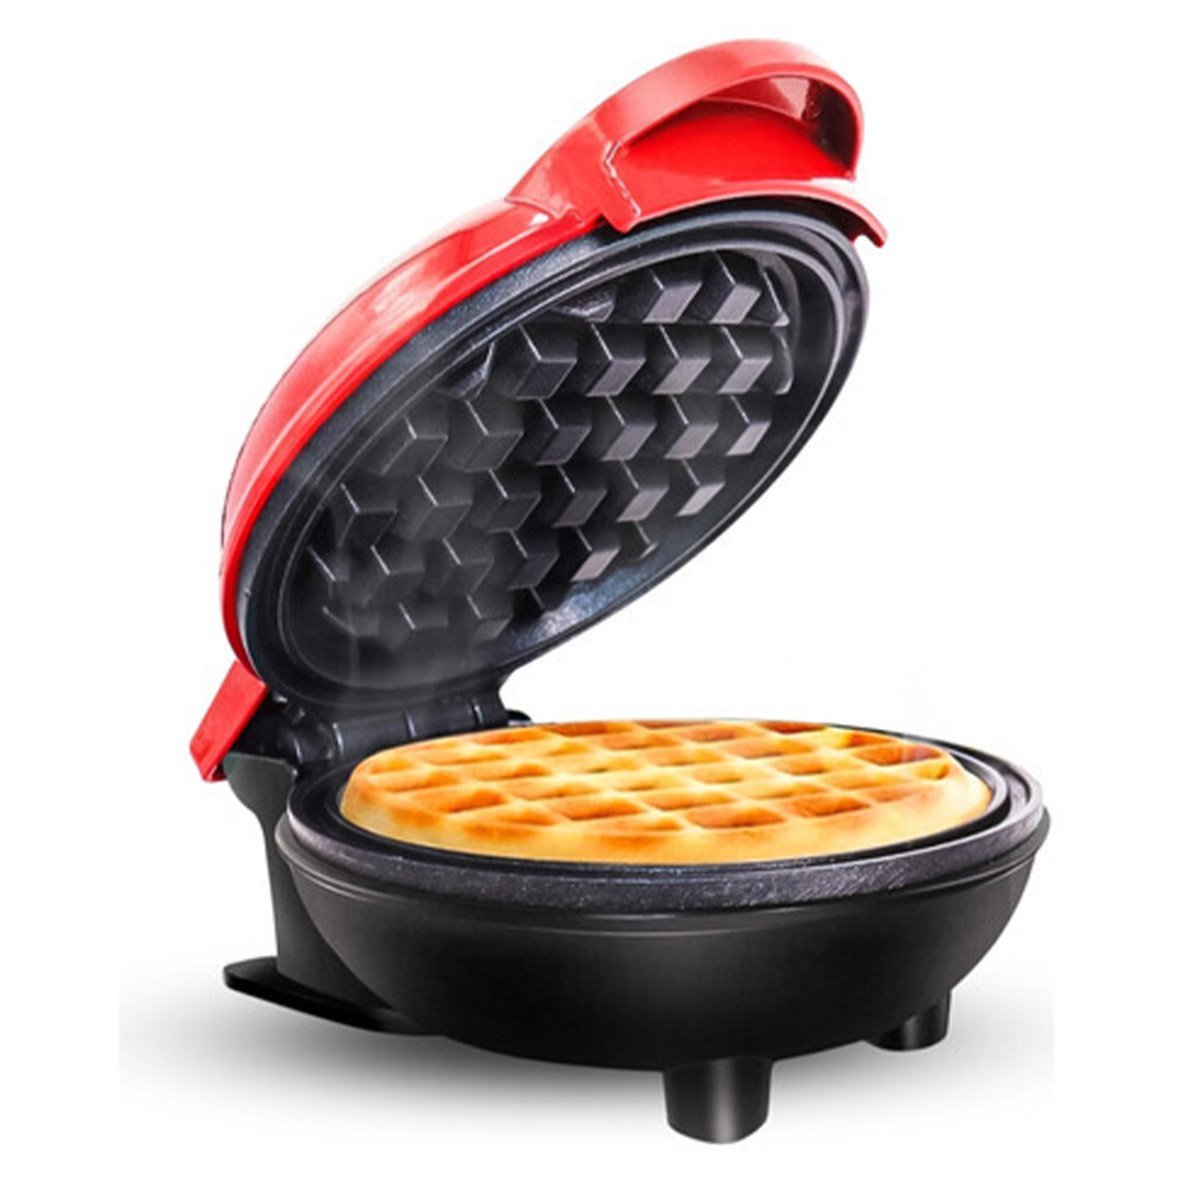 Mini Maquina de Waffles Panqueca Refeiçao Lanche Cozinha Cafe da Manha Placa Antiaderente Resistente - 6